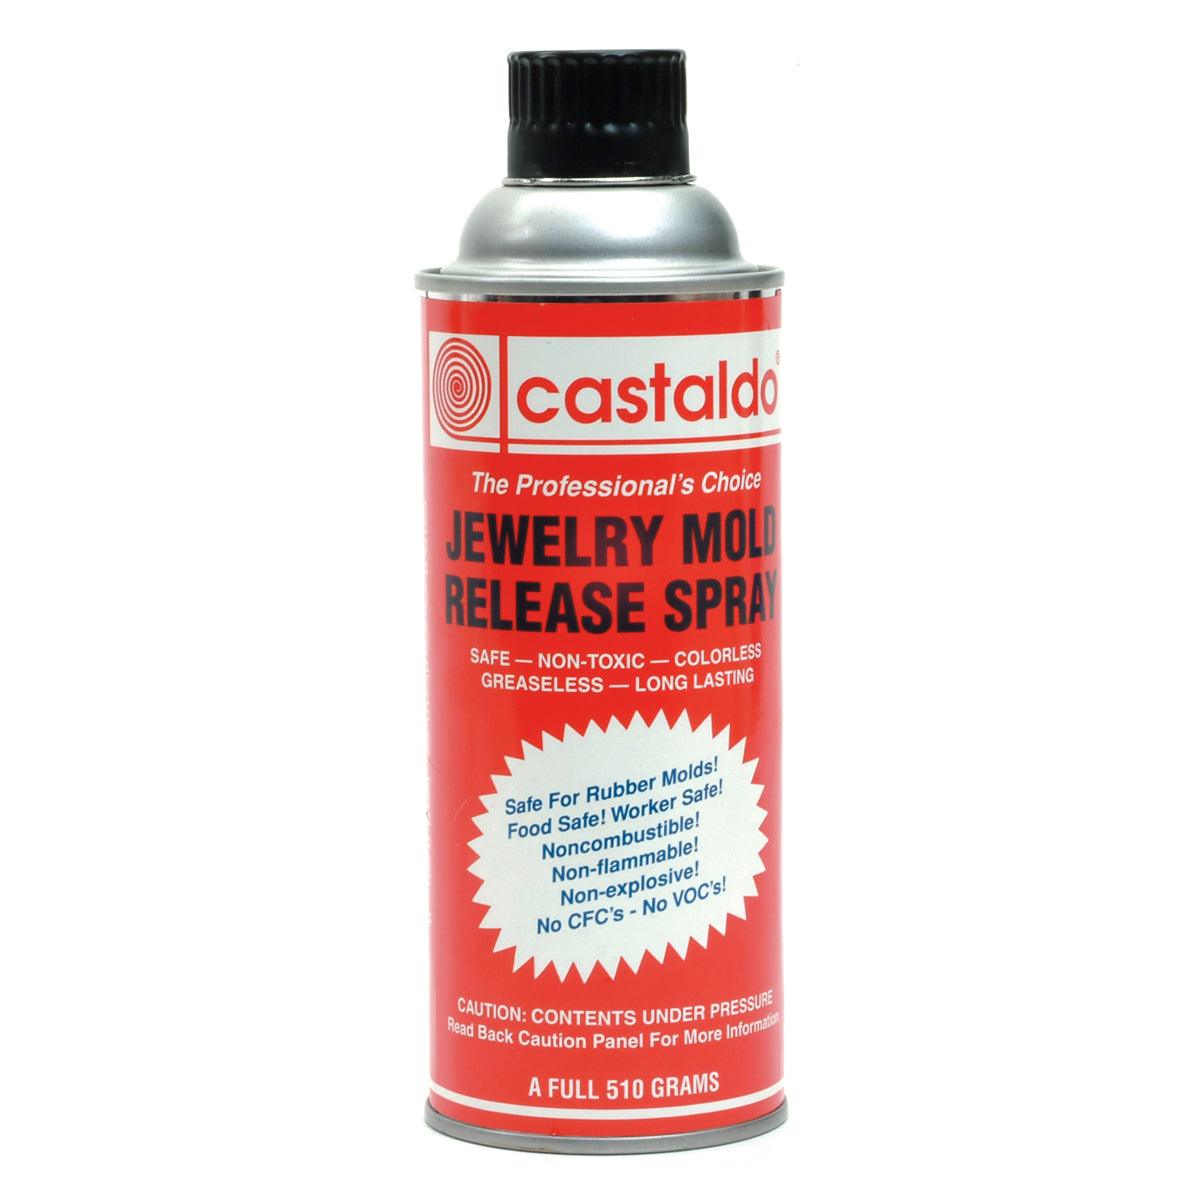 Jewelry Mold Release Spray – Castaldo